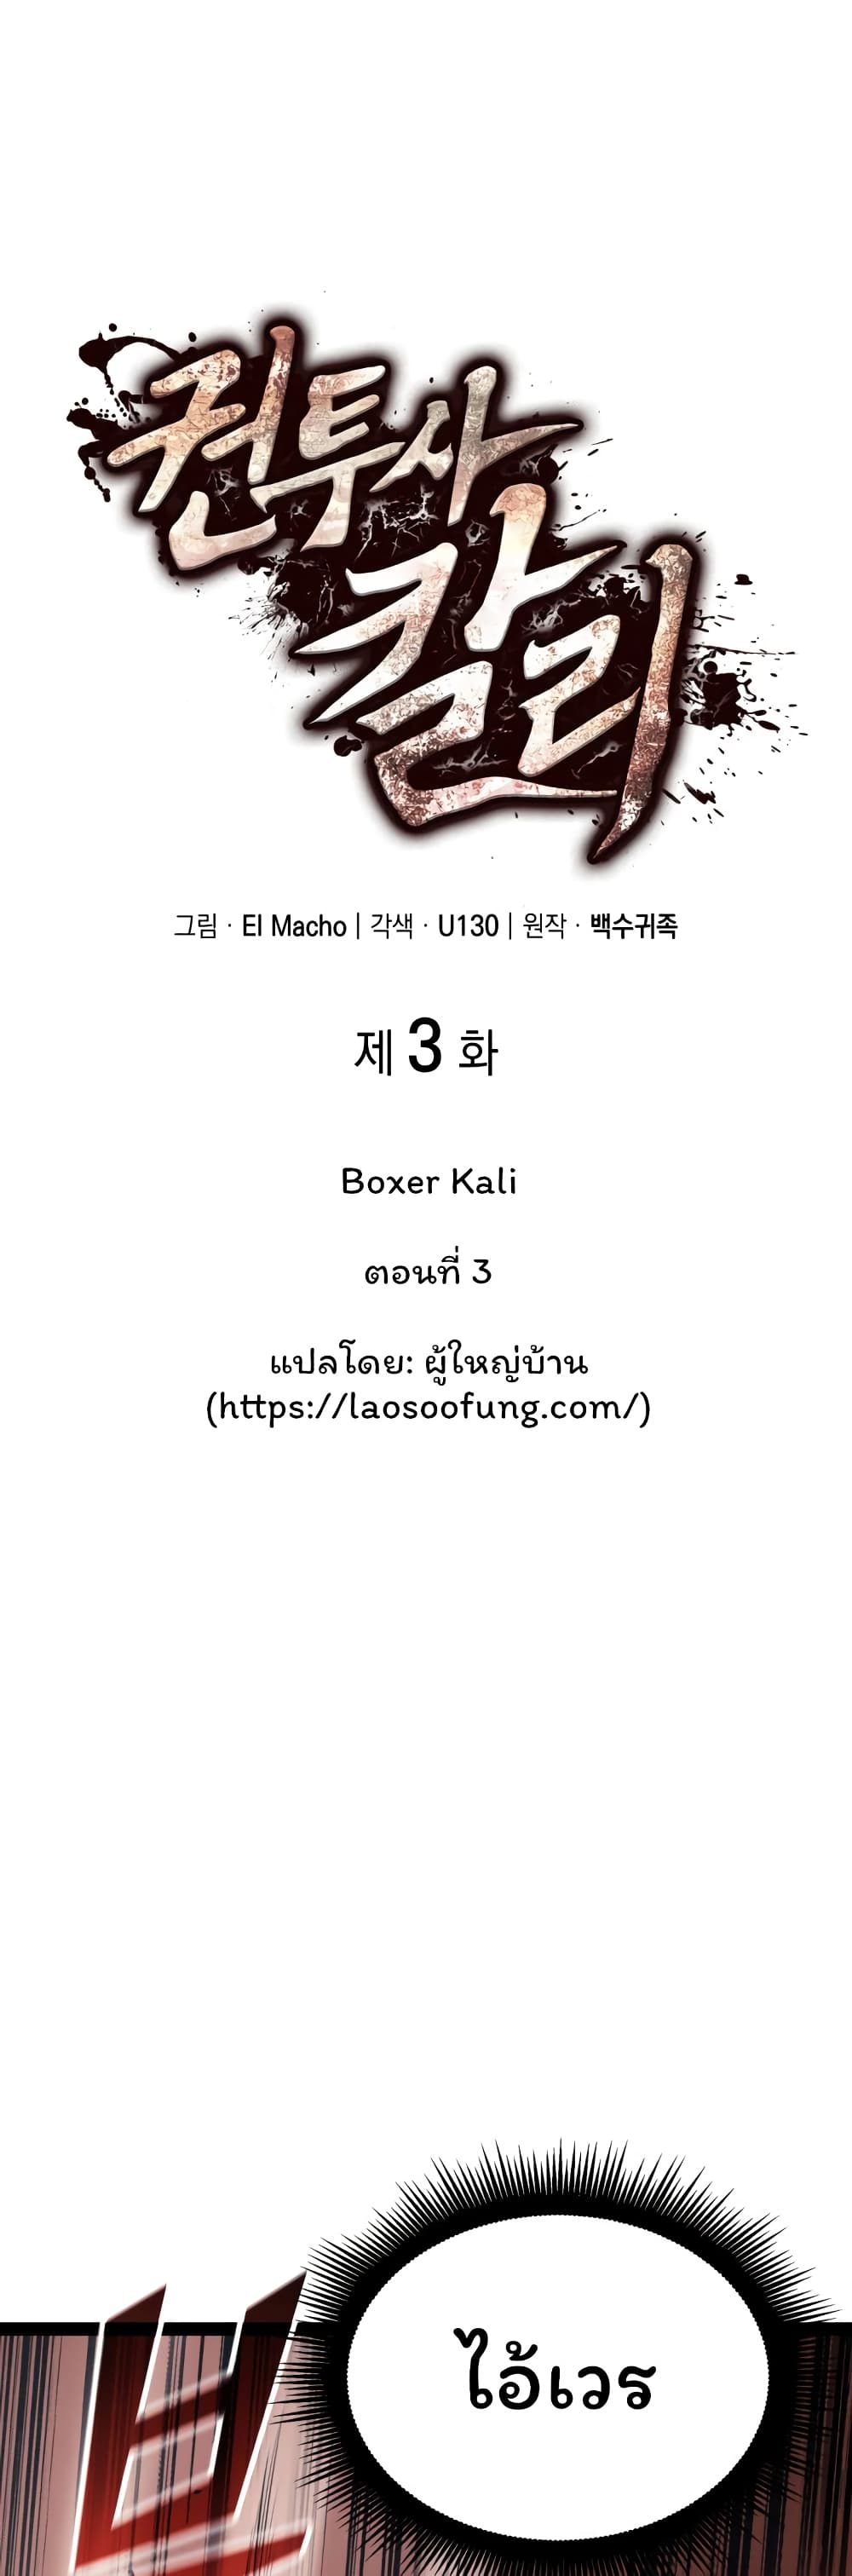 Boxer Kali 3-3